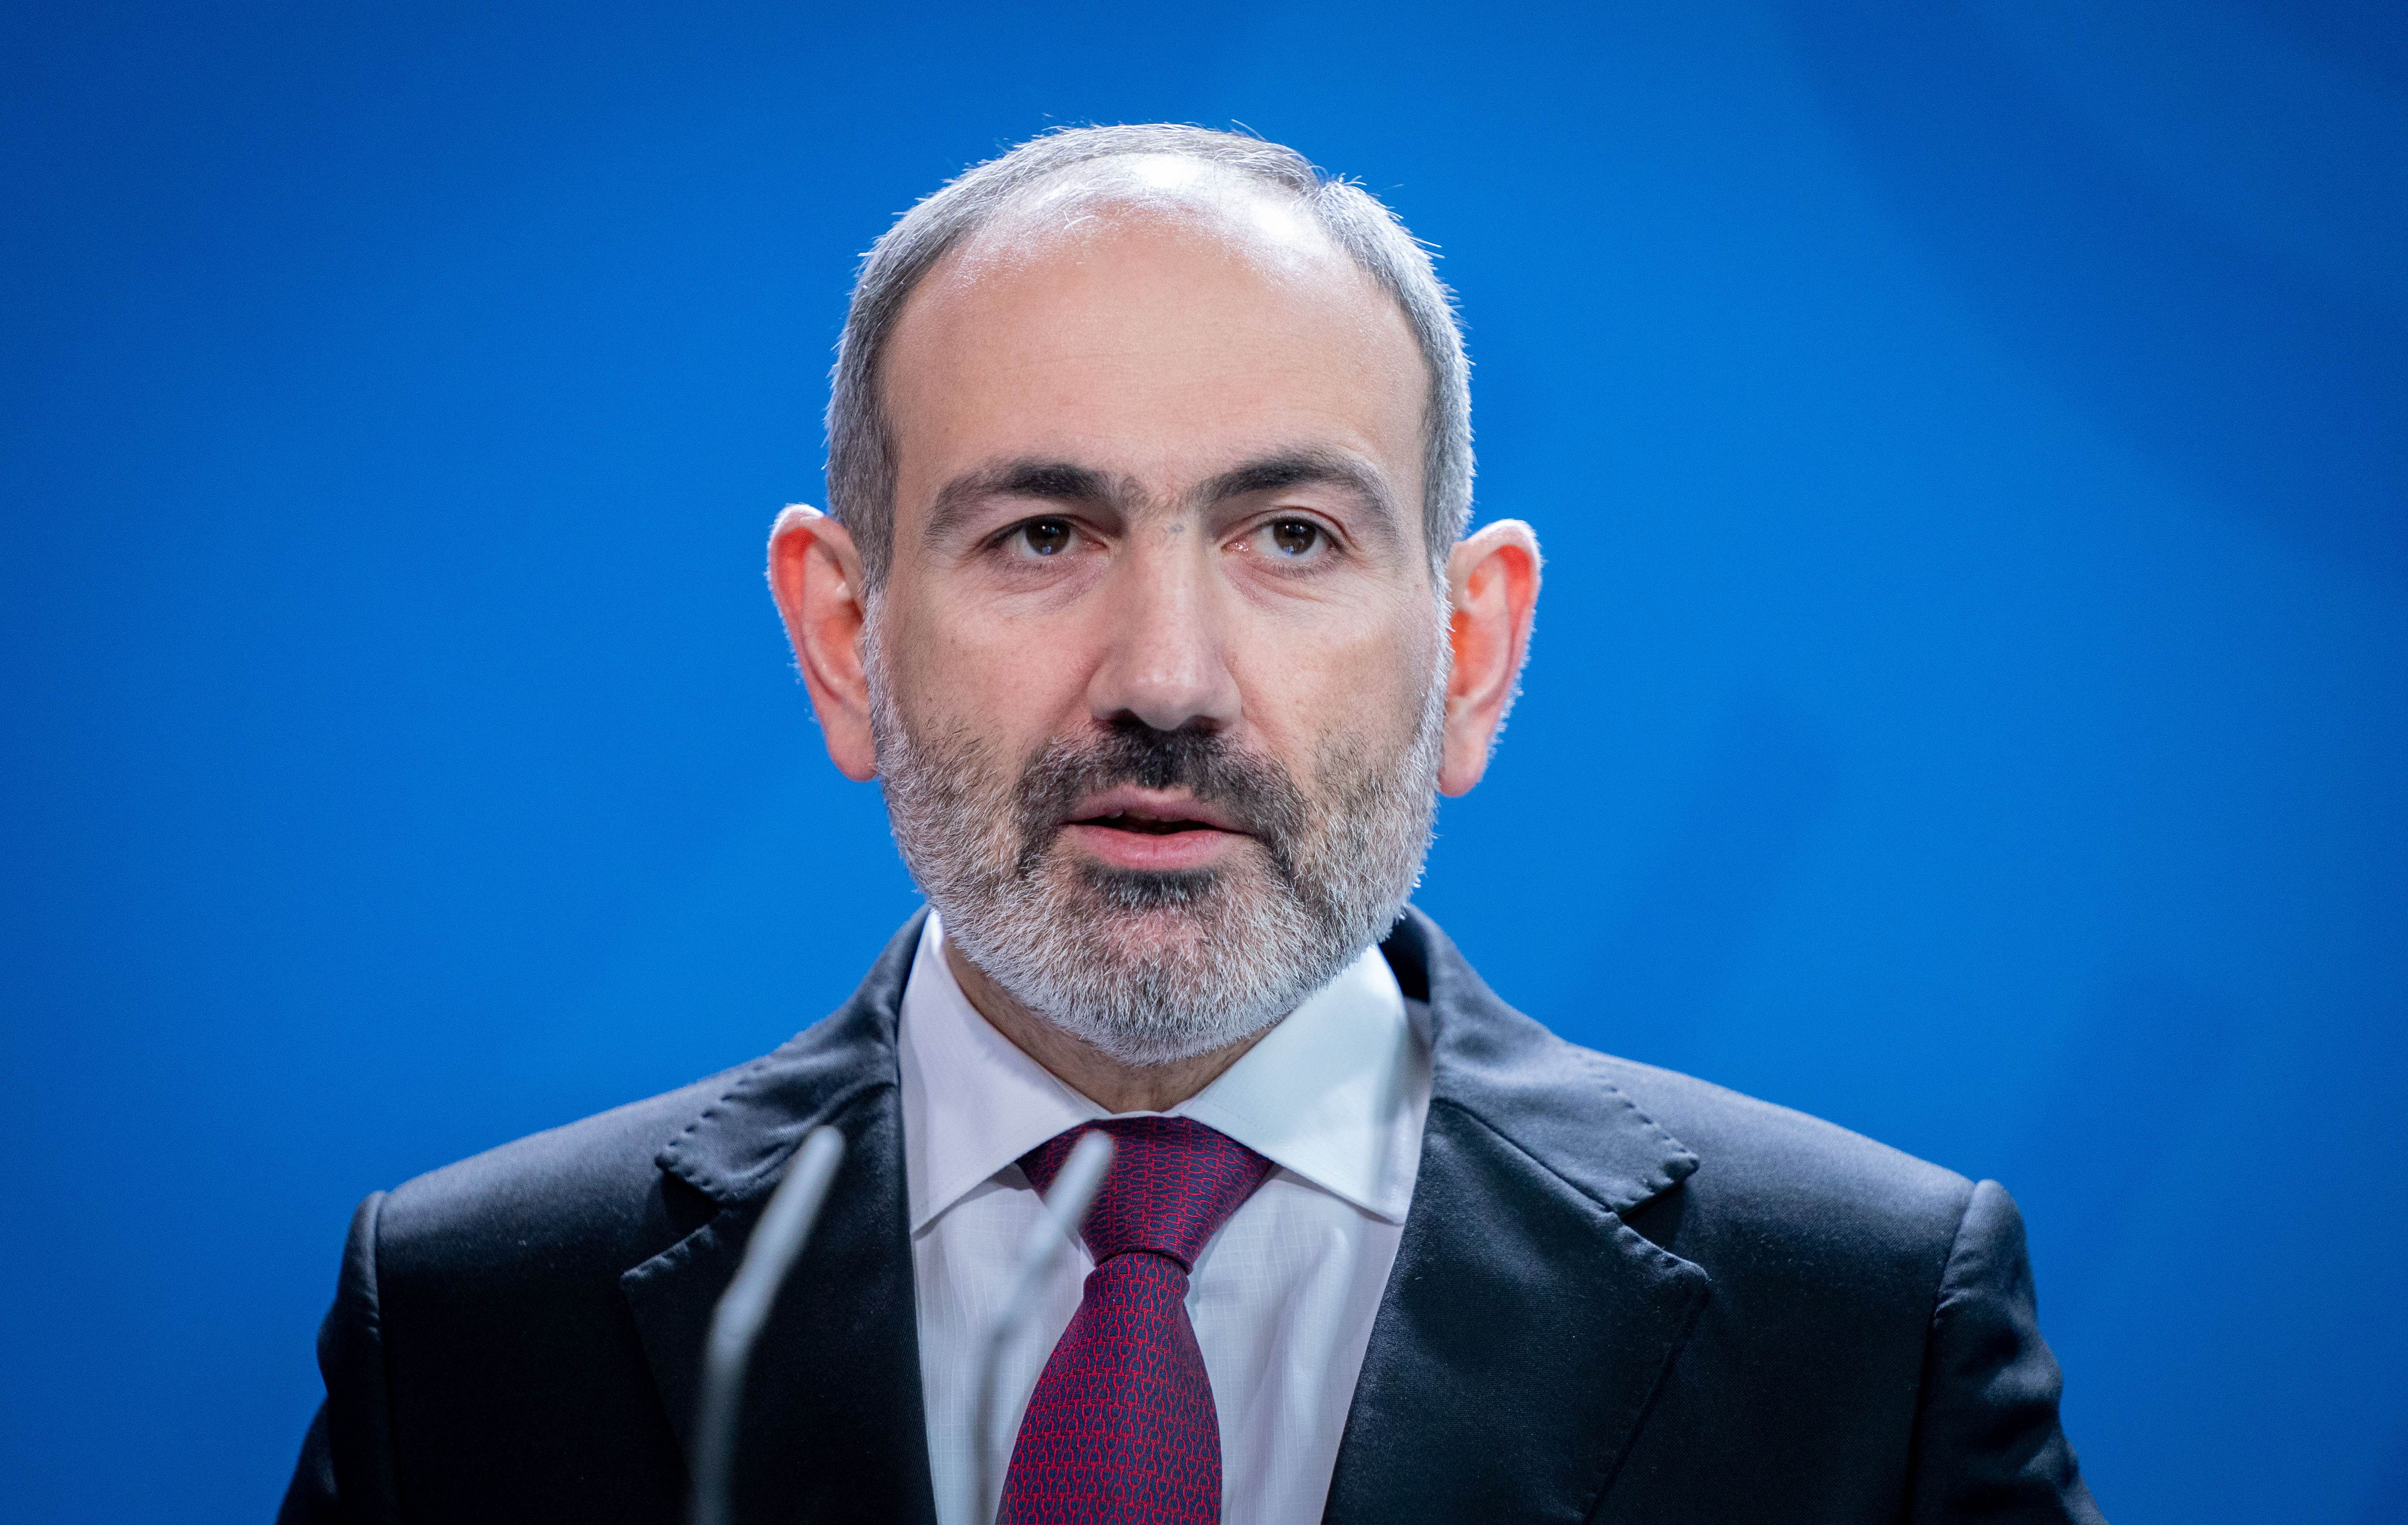 13/02/2020 El primer ministro de Armenia, Nikol Pashinian
POLITICA INTERNACIONAL
Kay Nietfeld/dpa
